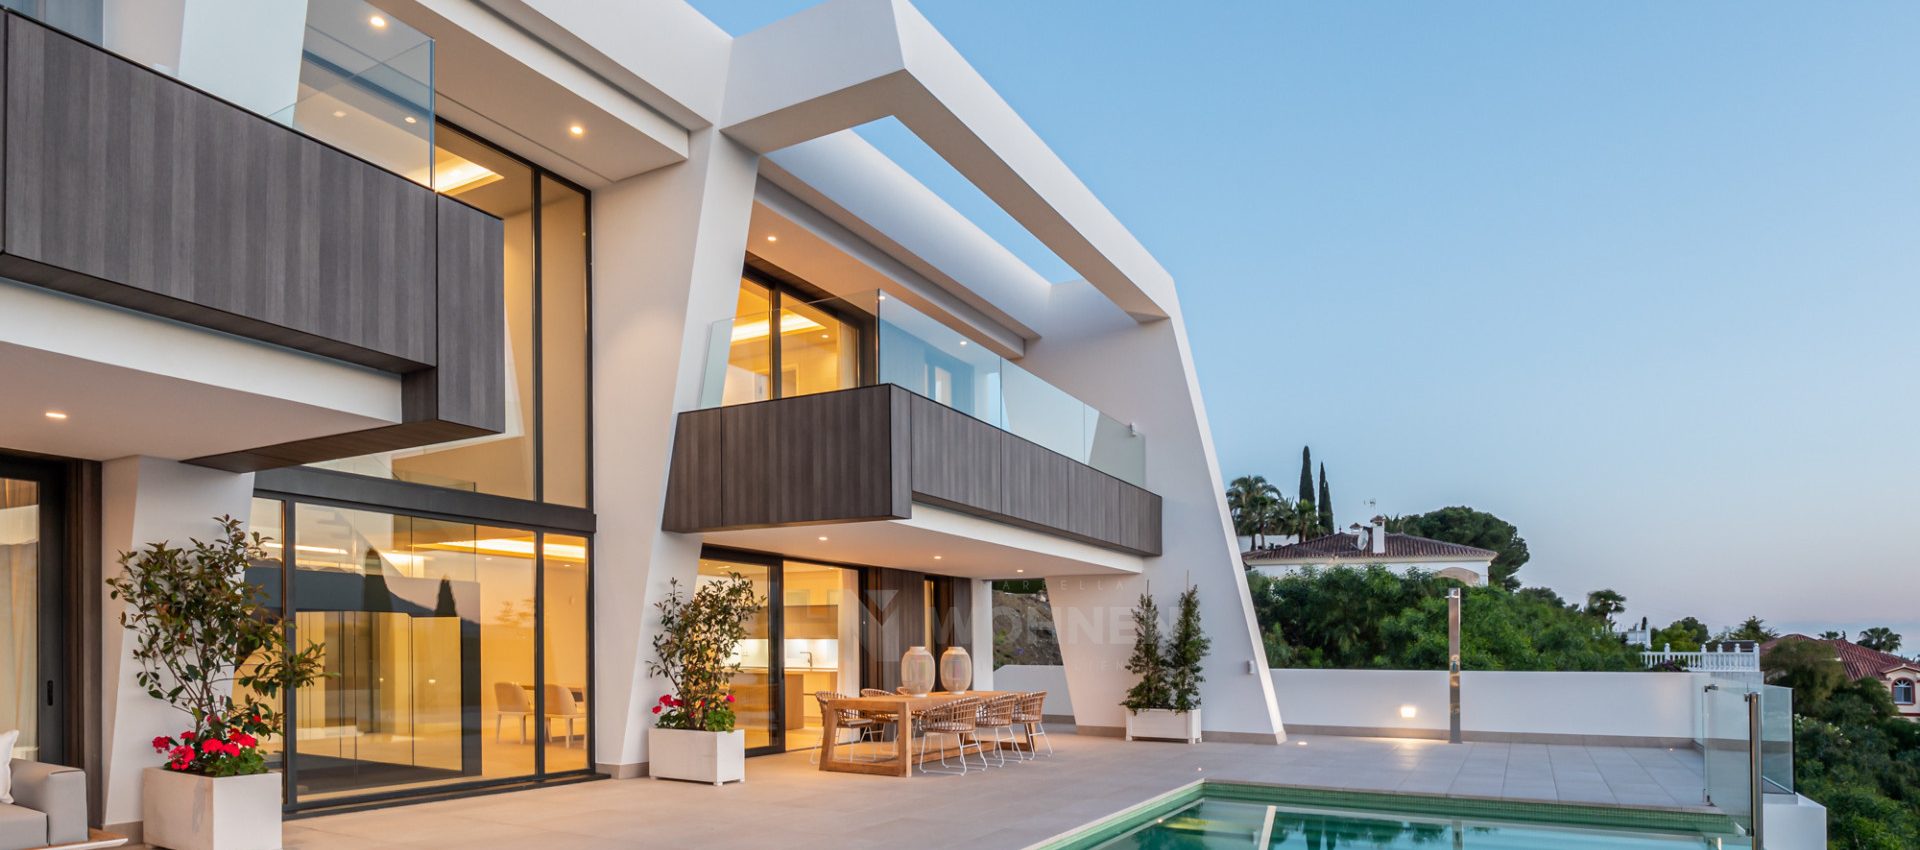 New luxury contemporary villas with panoramic views